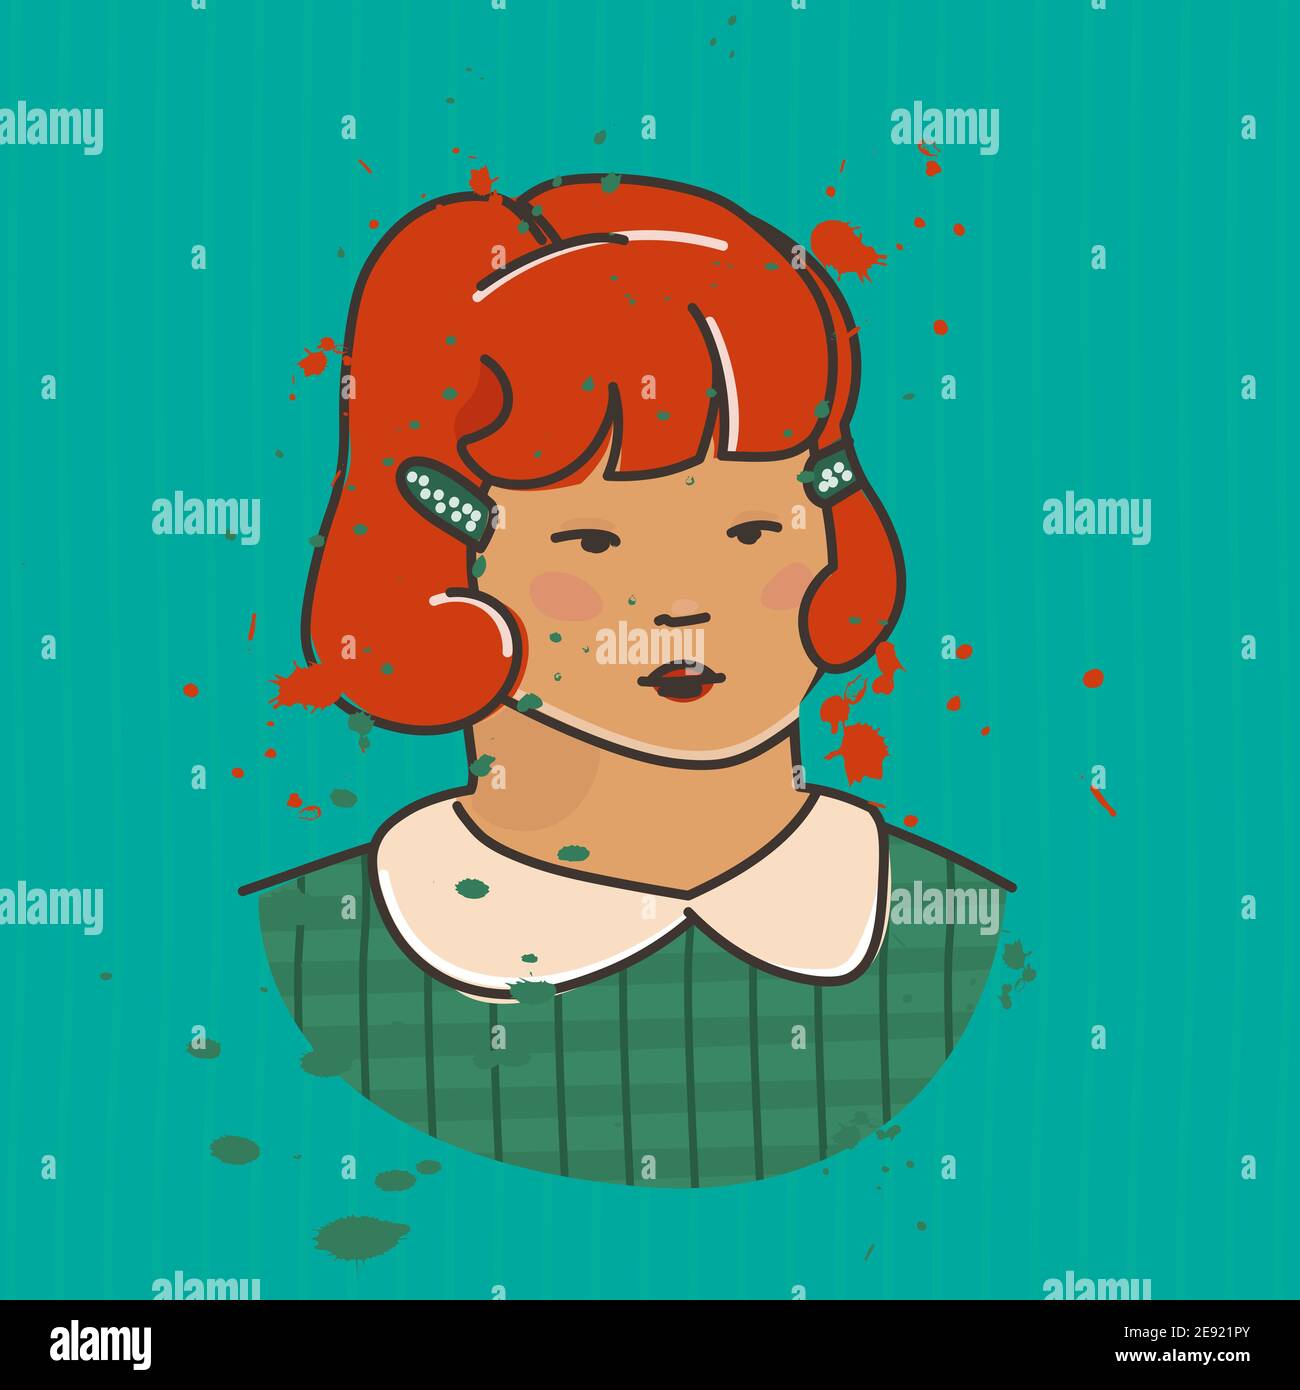 Immagine vettoriale in stile retrò multicolore. Ritratto di una giovane ragazza dai capelli rossi. Illustrazione Vettoriale